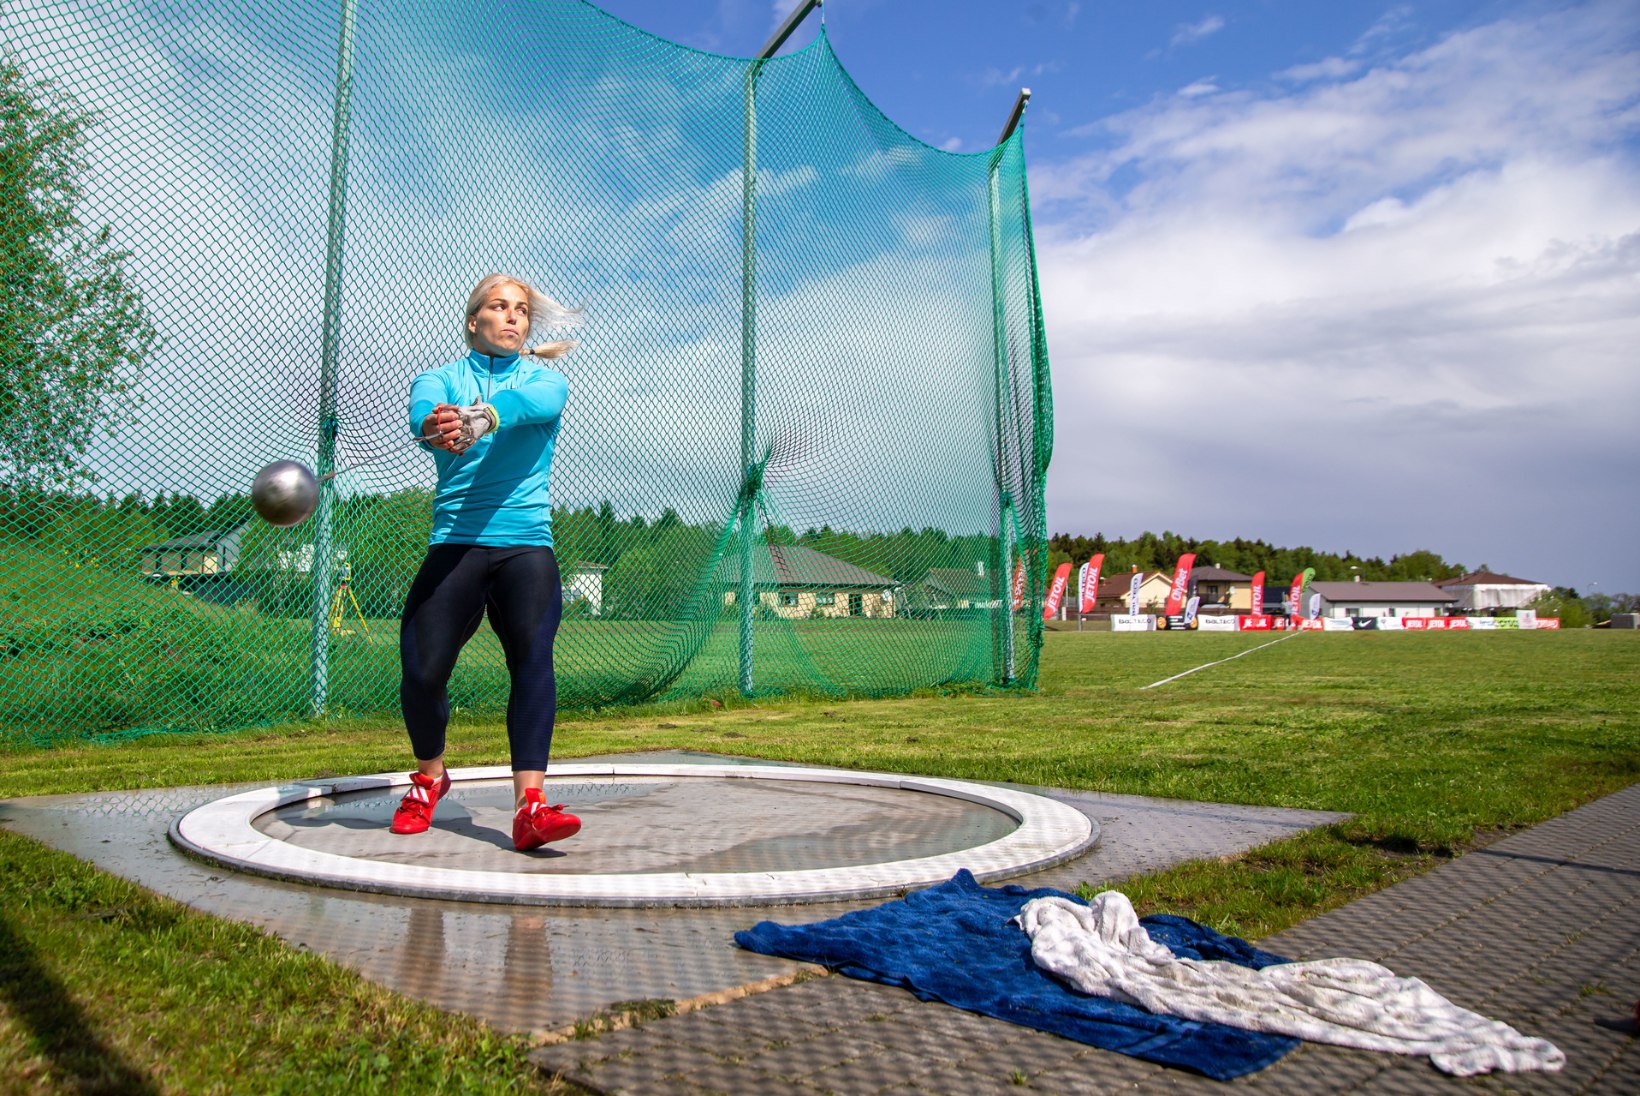 ÕL EKSKLUSIIV | Soomes treeniv Eesti vasaraheite eksrekordiomanik: minu meelest on sportlase elu paljuski karantiiniga sarnane